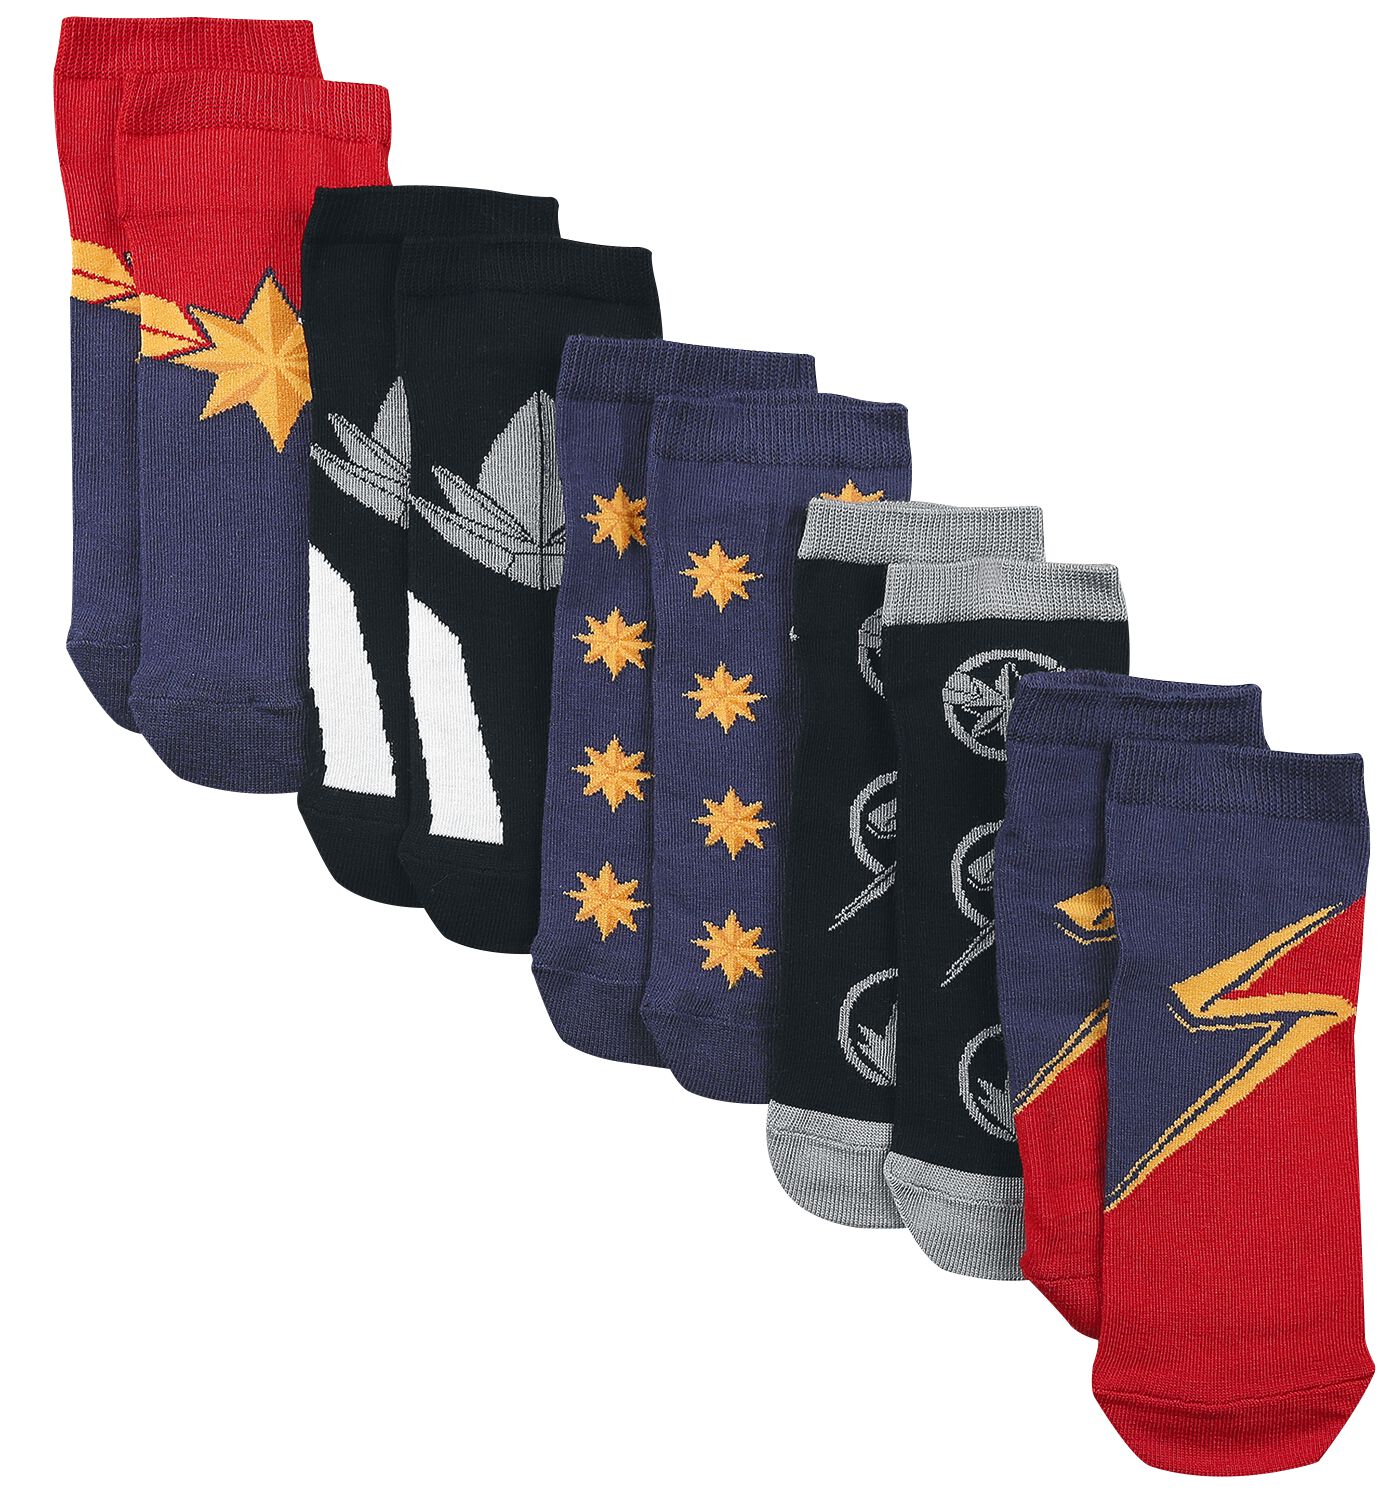 The Marvels - Marvel Socken - EU35-38 bis EU39-42 - für Damen - Größe EU 35-38 - multicolor  - EMP exklusives Merchandise!